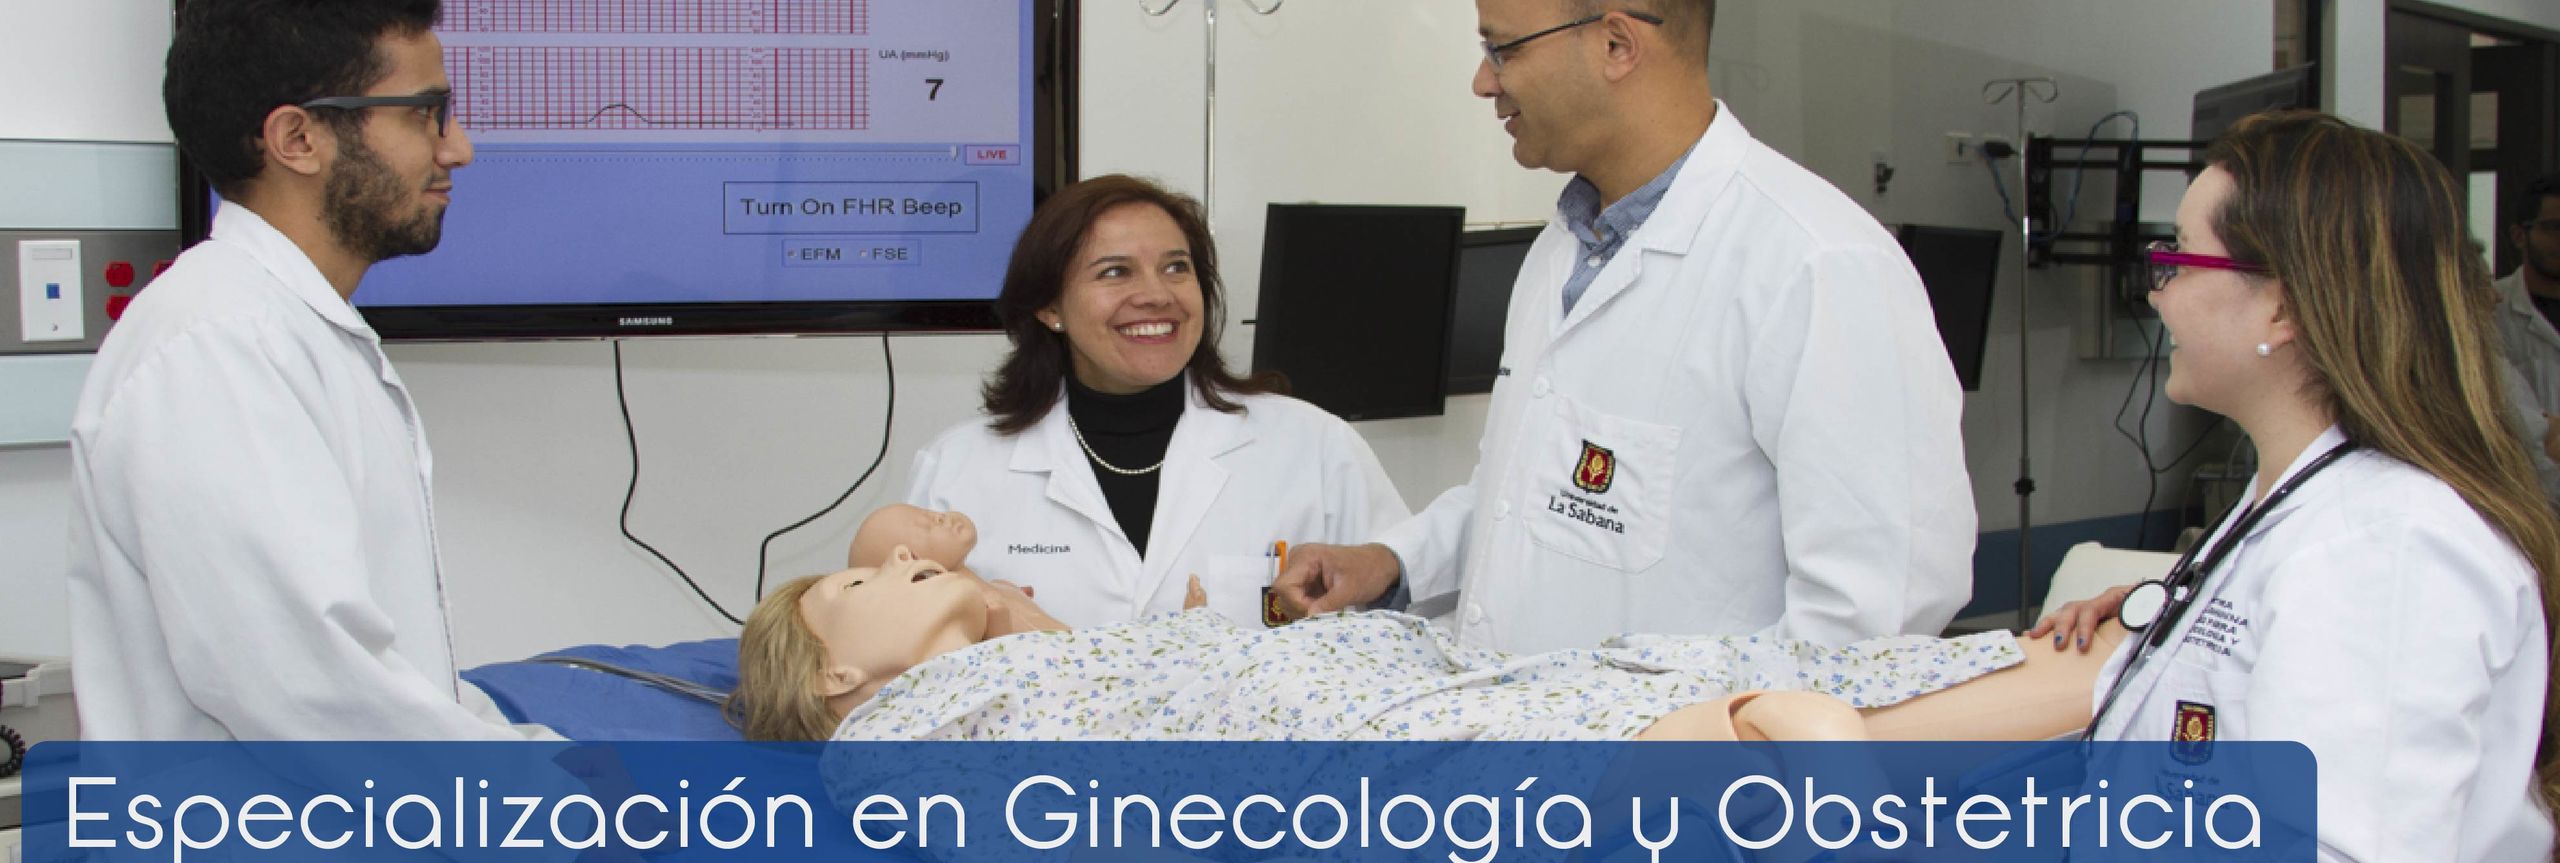 Especialización en Ginecología y Obstetricia 